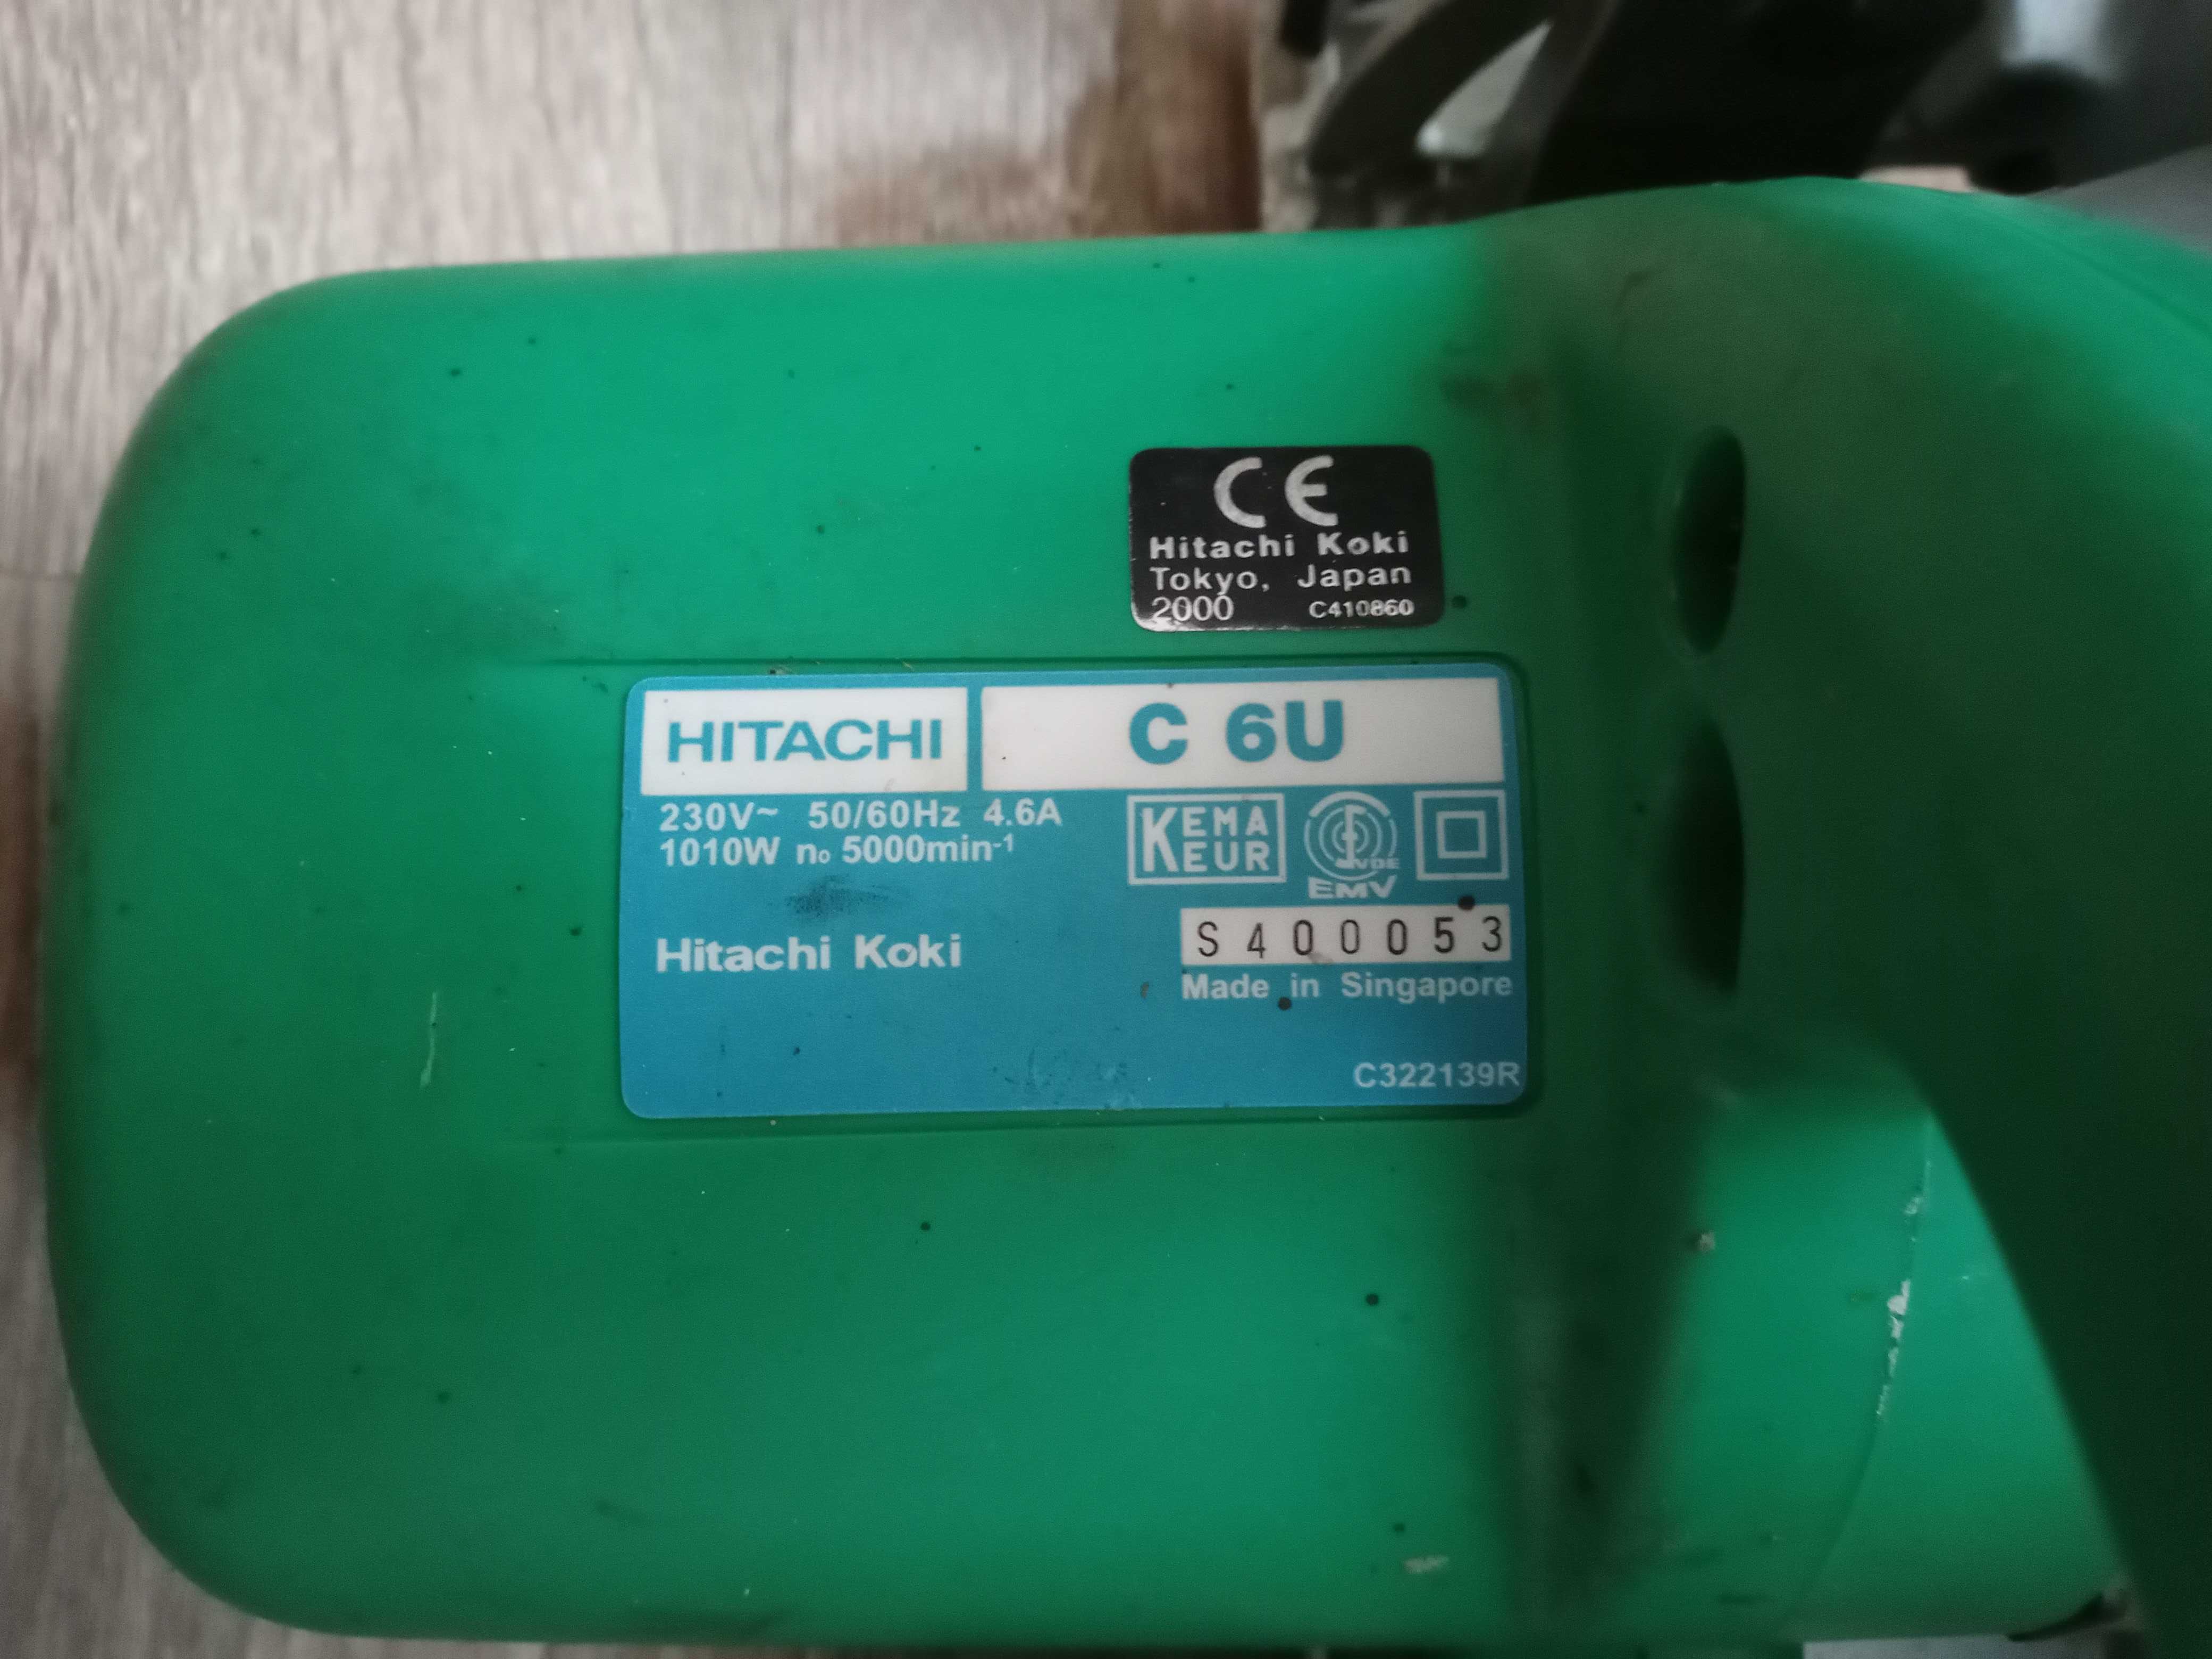 Piła Hitachi (Hikoki) C6U z tarczą 165 mm i z wolnym rozruchem